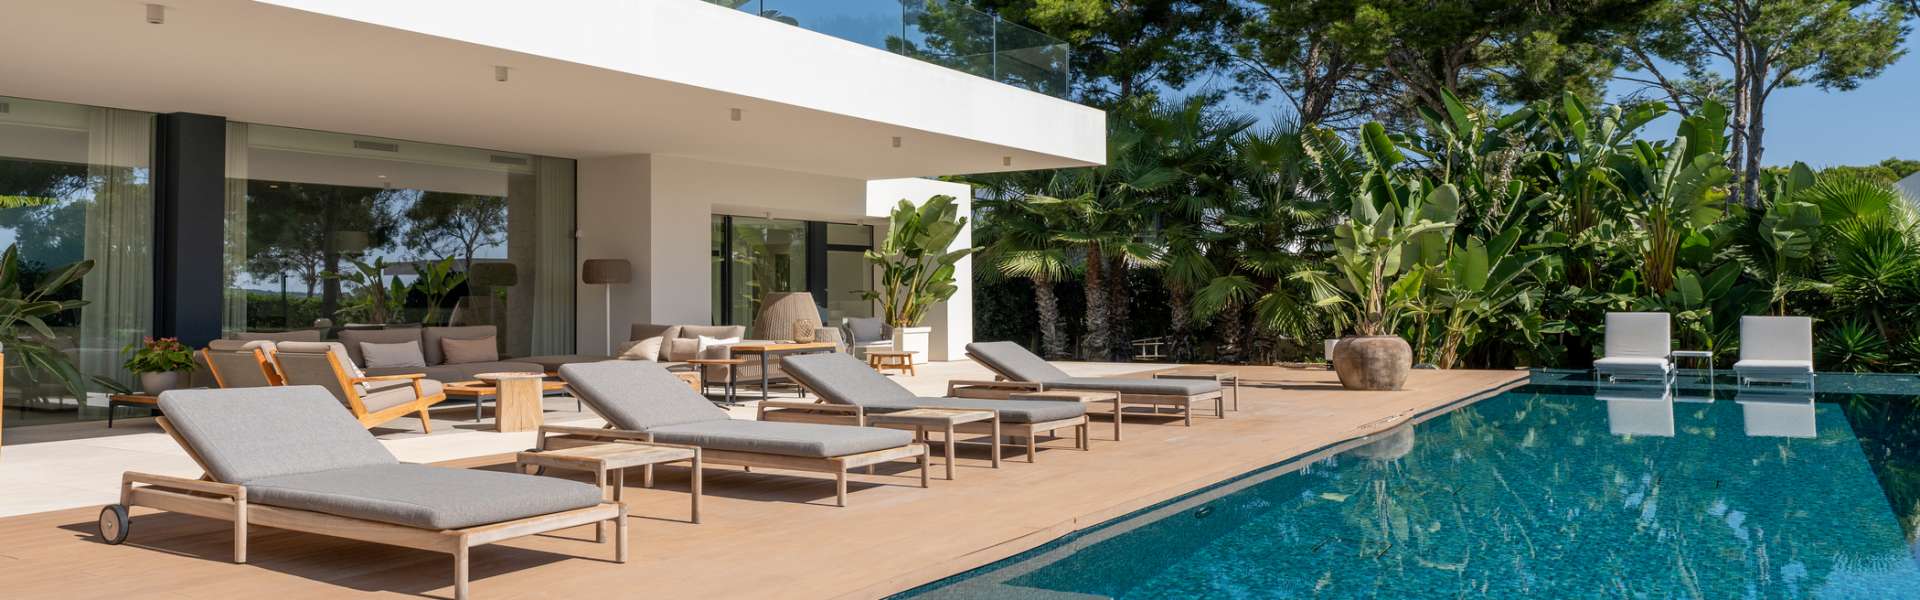 Luxus Villa in Santa Ponsa mit Gäste-Apartment & erstklassiger Ausstattung 